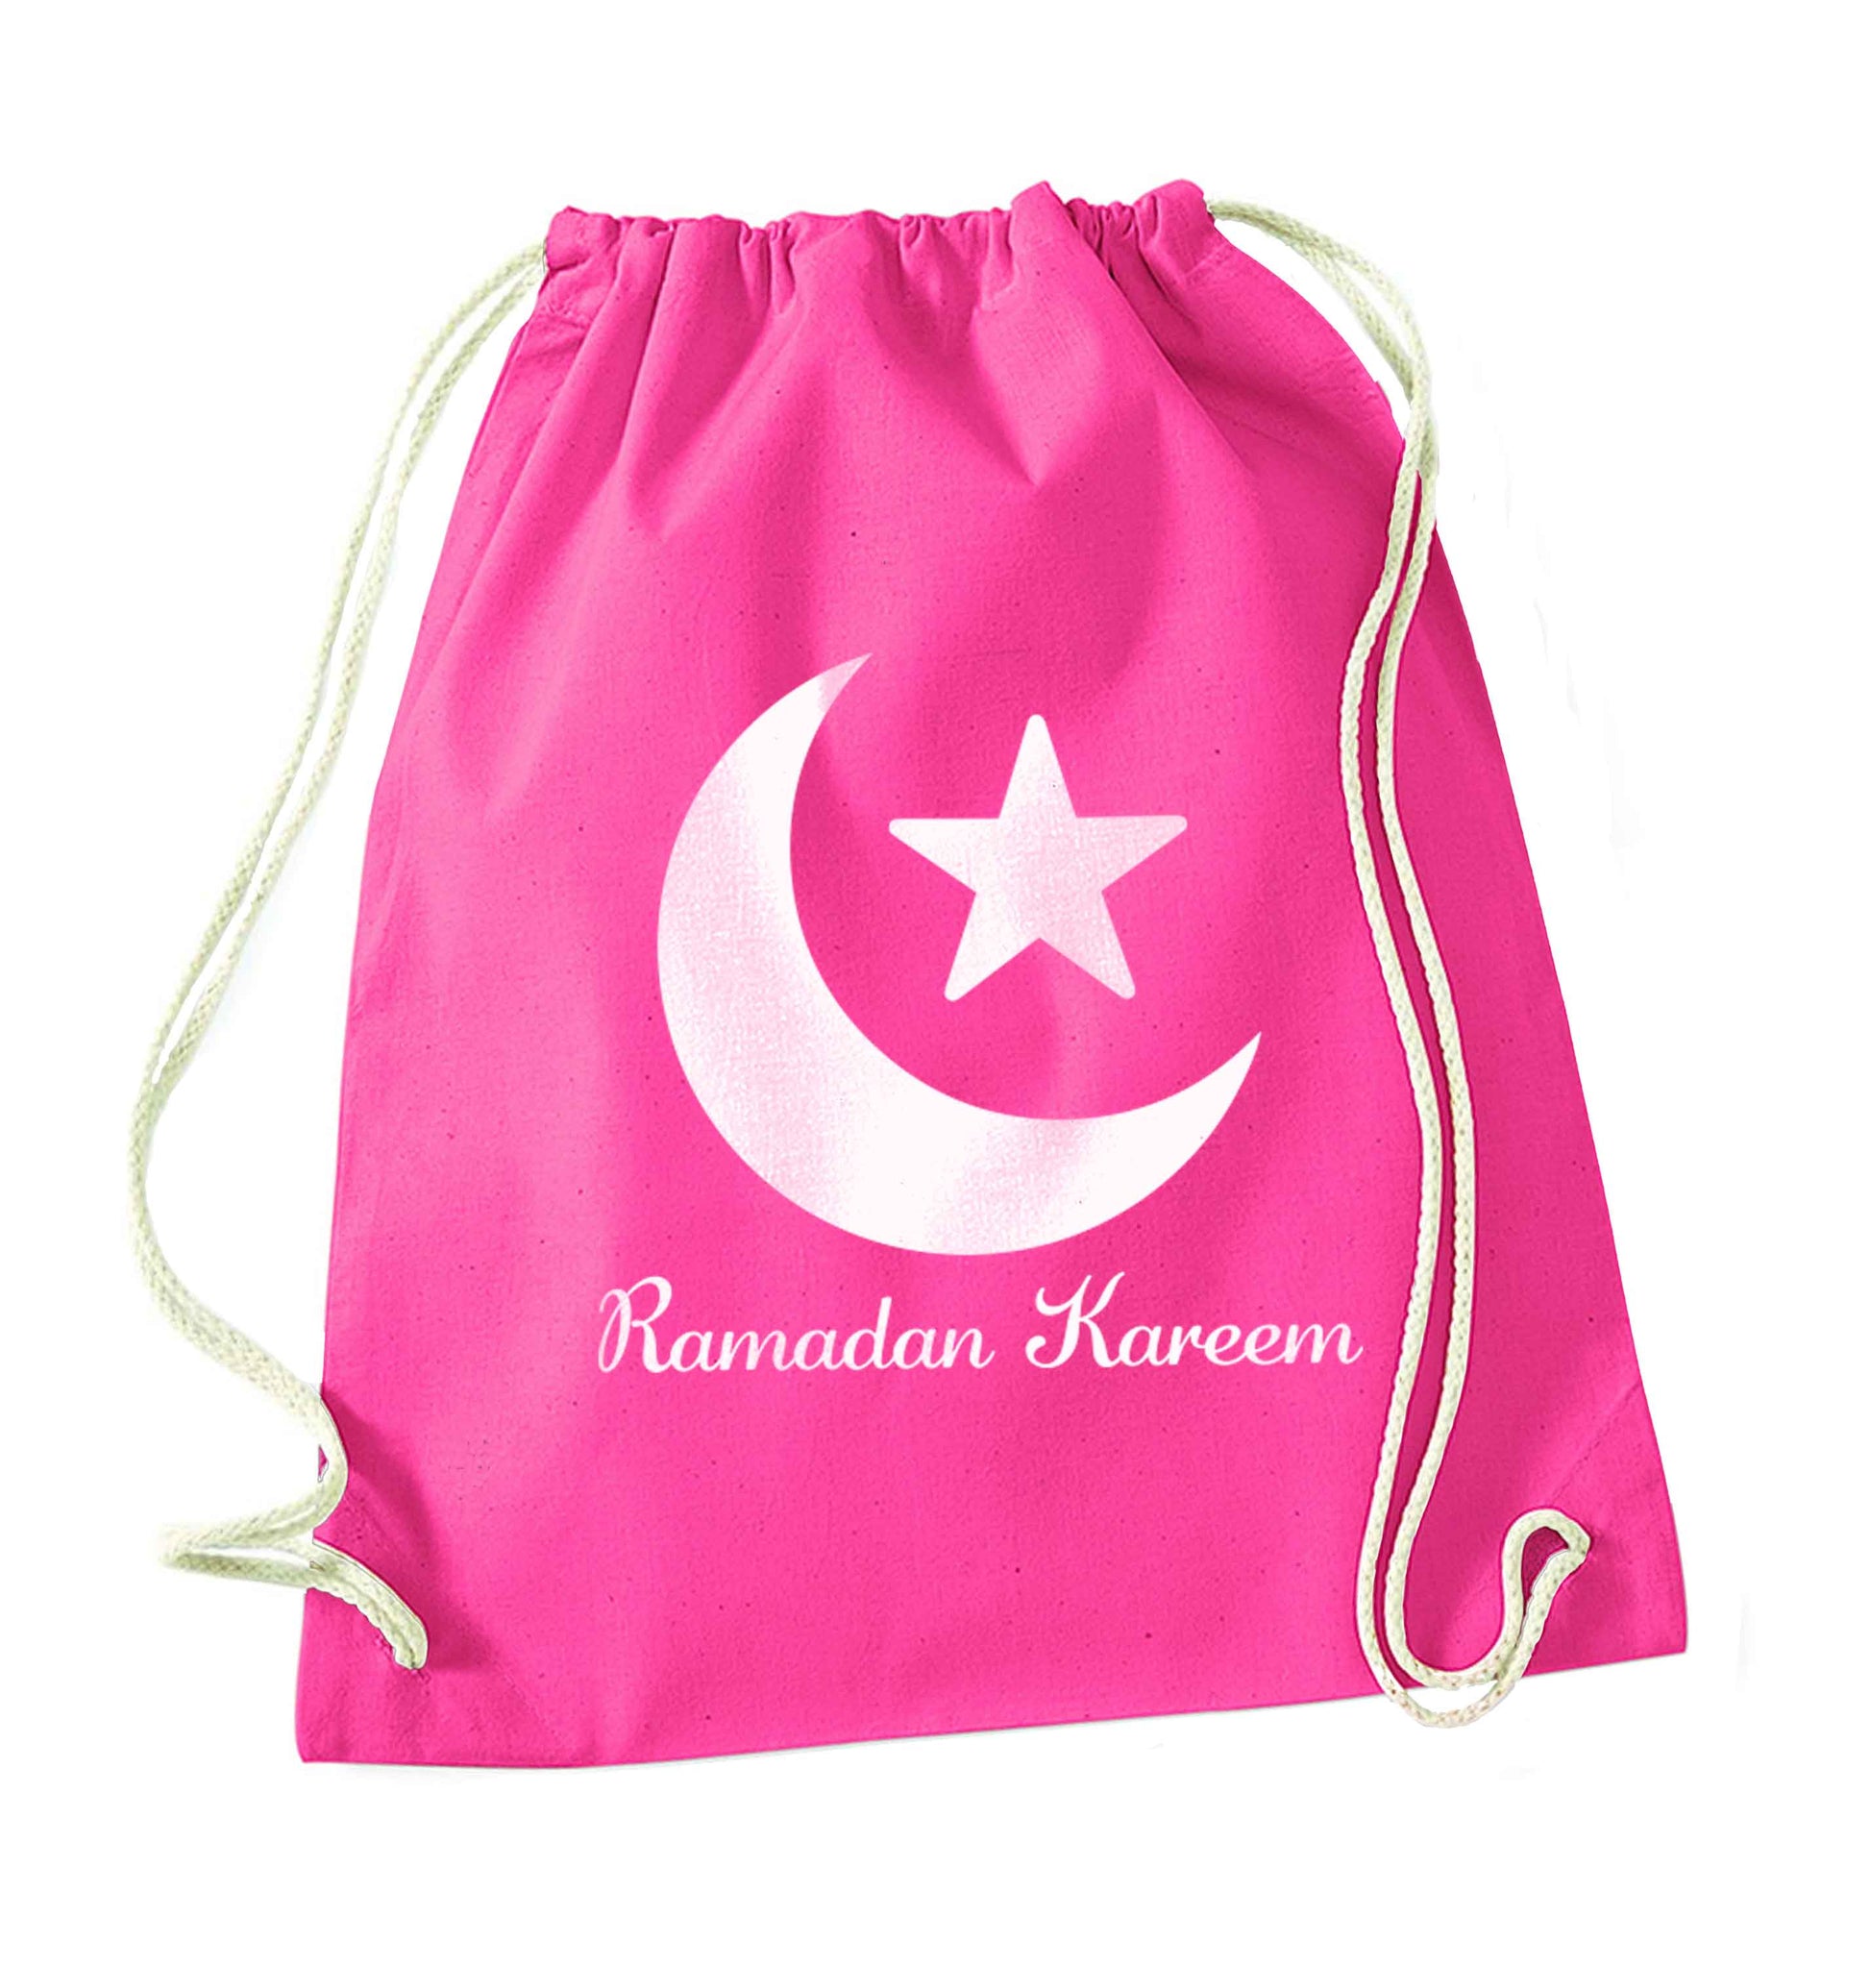 Ramadan kareem pink drawstring bag